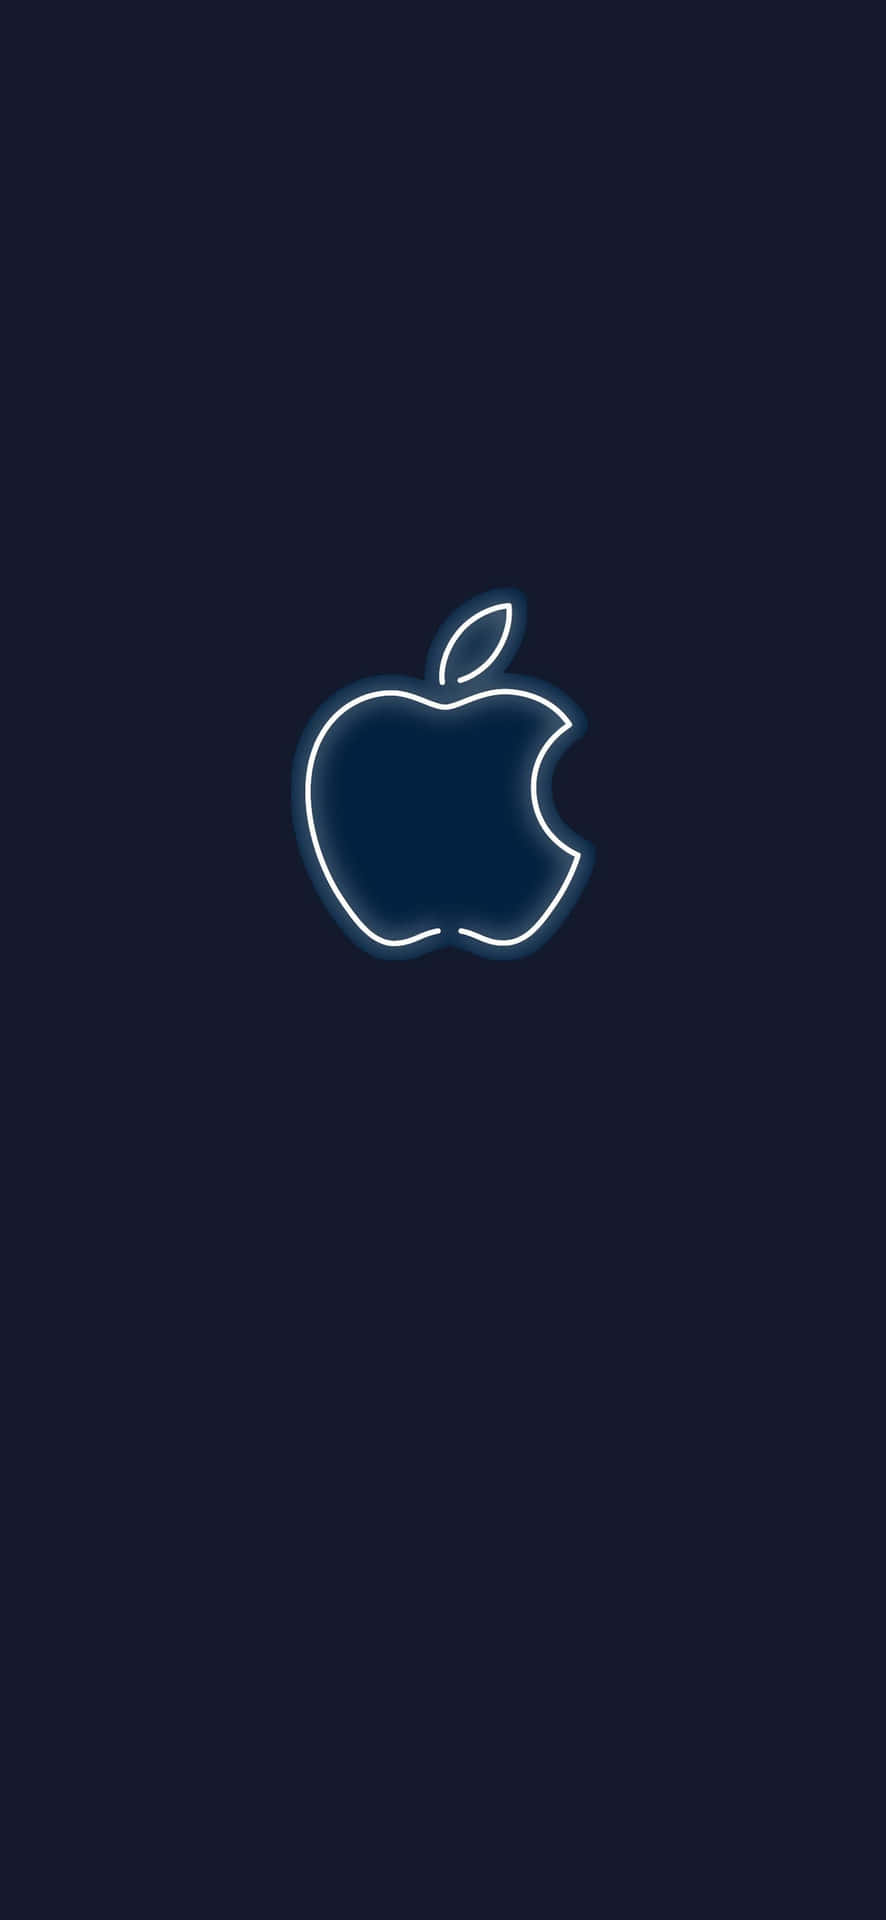 Apple Logo Illuminated on a Dark Background